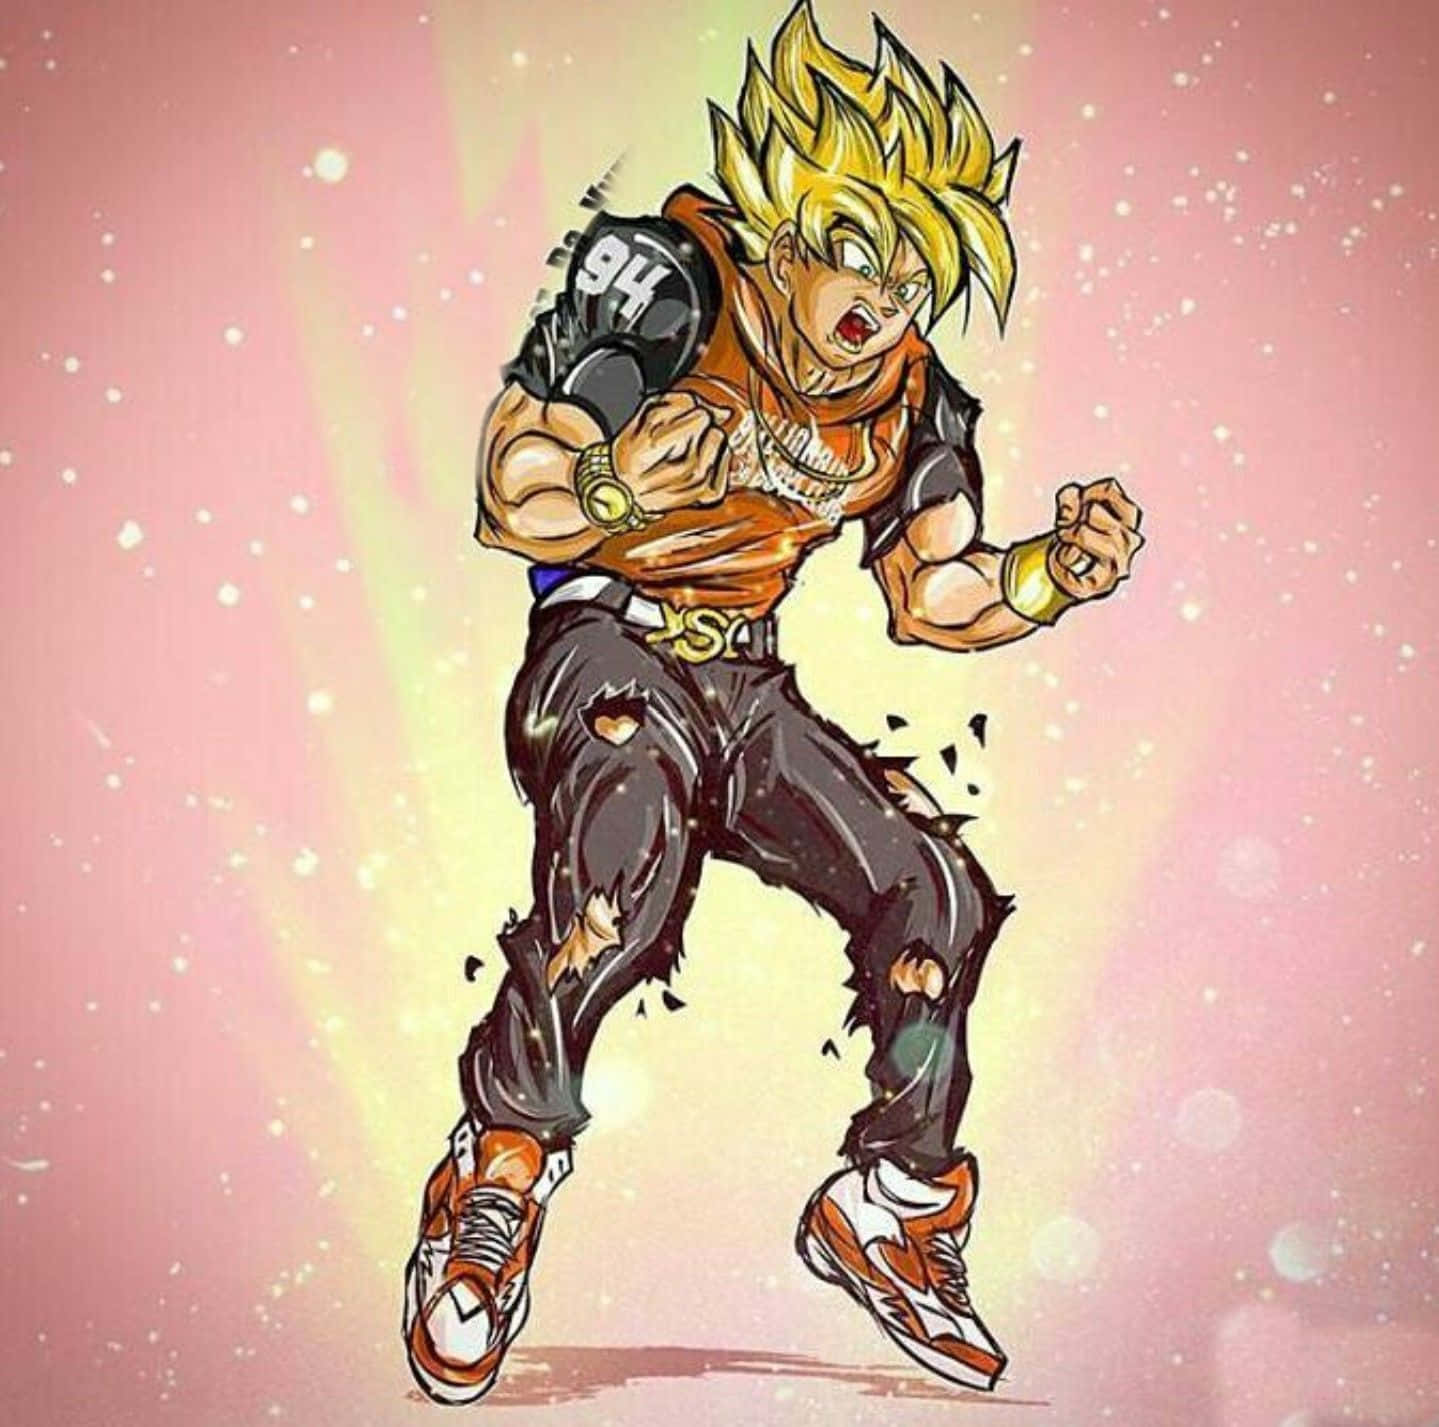 Gokusupreme Führt Mit Unglaublicher Stärke, Kraft Und Entschlossenheit Den Weg An. Wallpaper